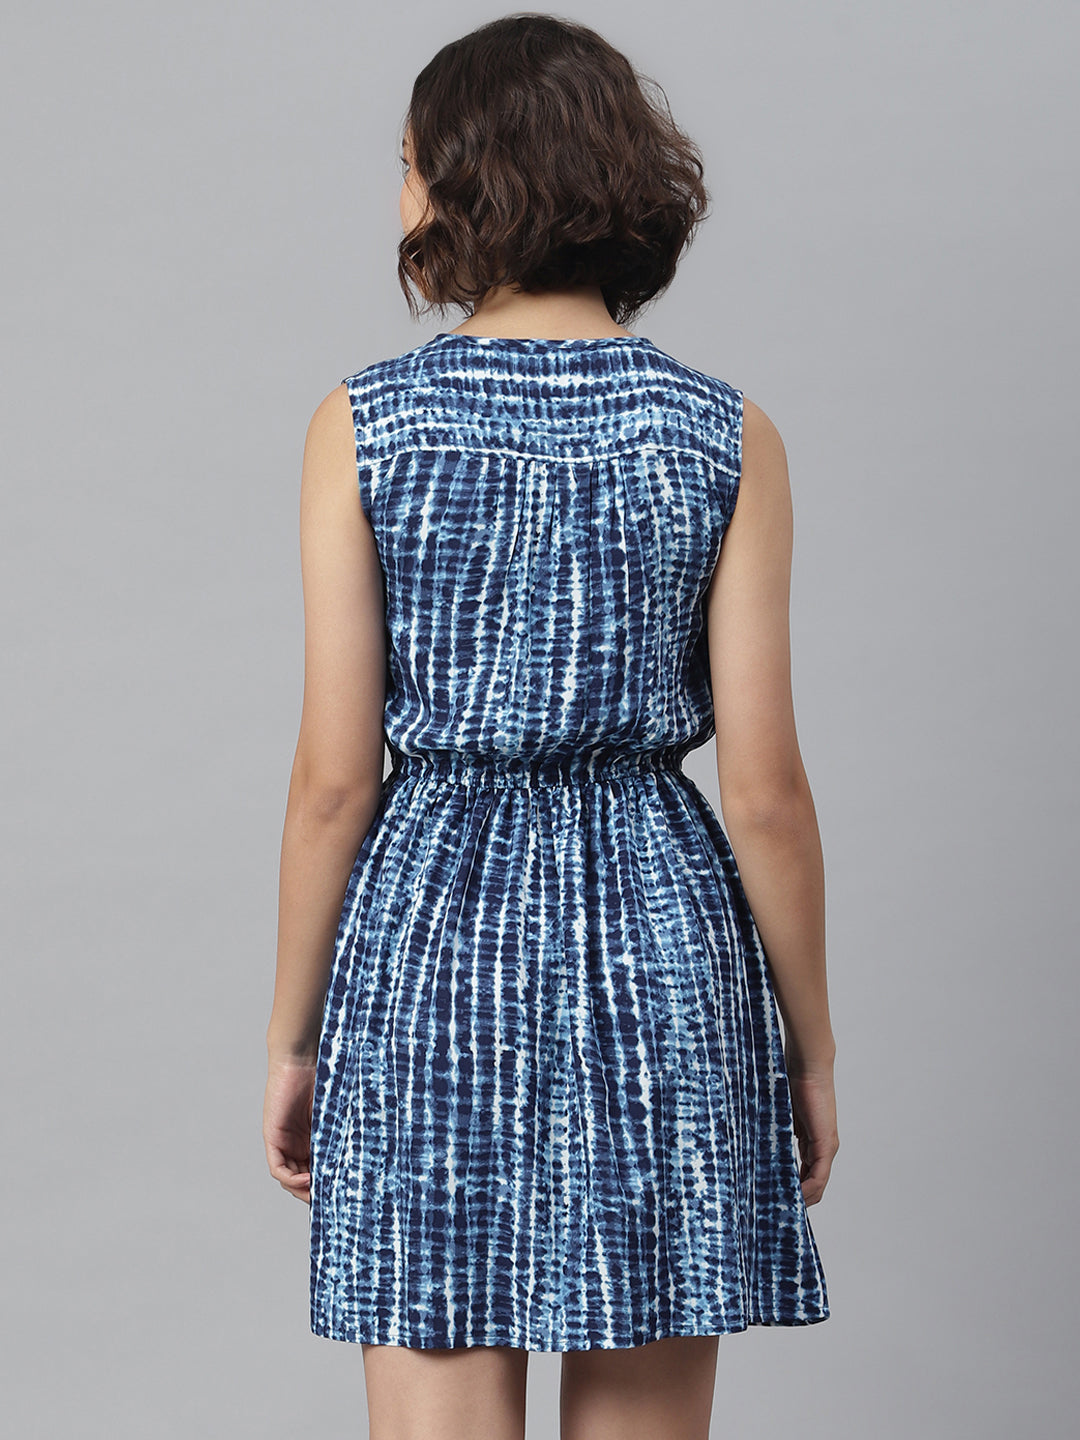 Women's Blue Tie & Dye Printed  Dress